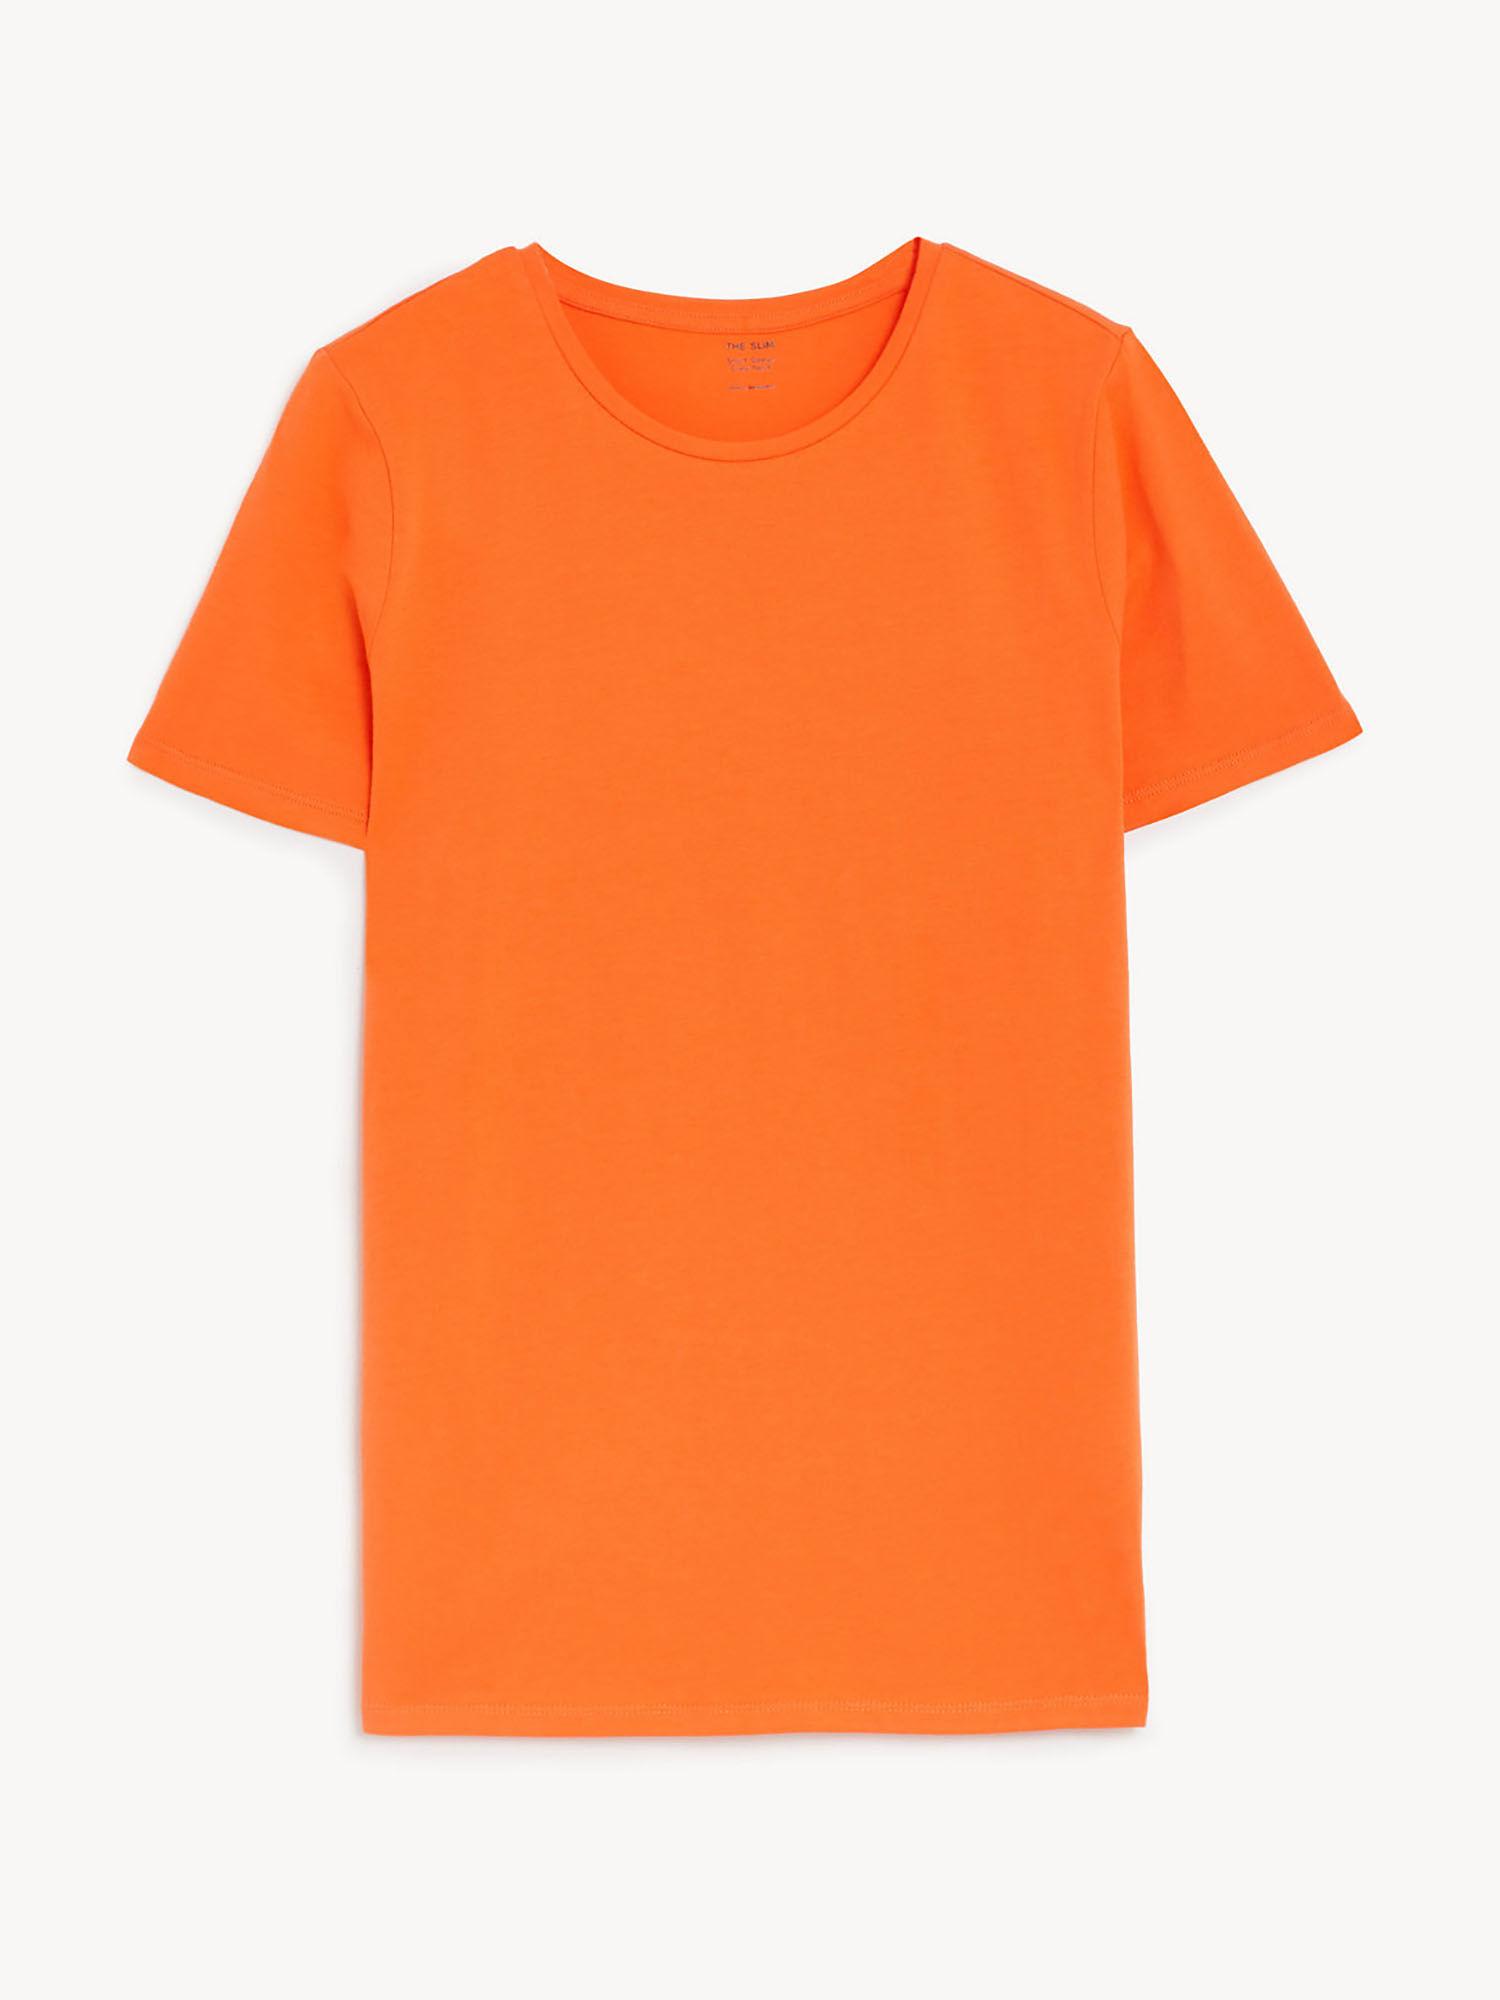 cotton rich slim fit orange t-shirt